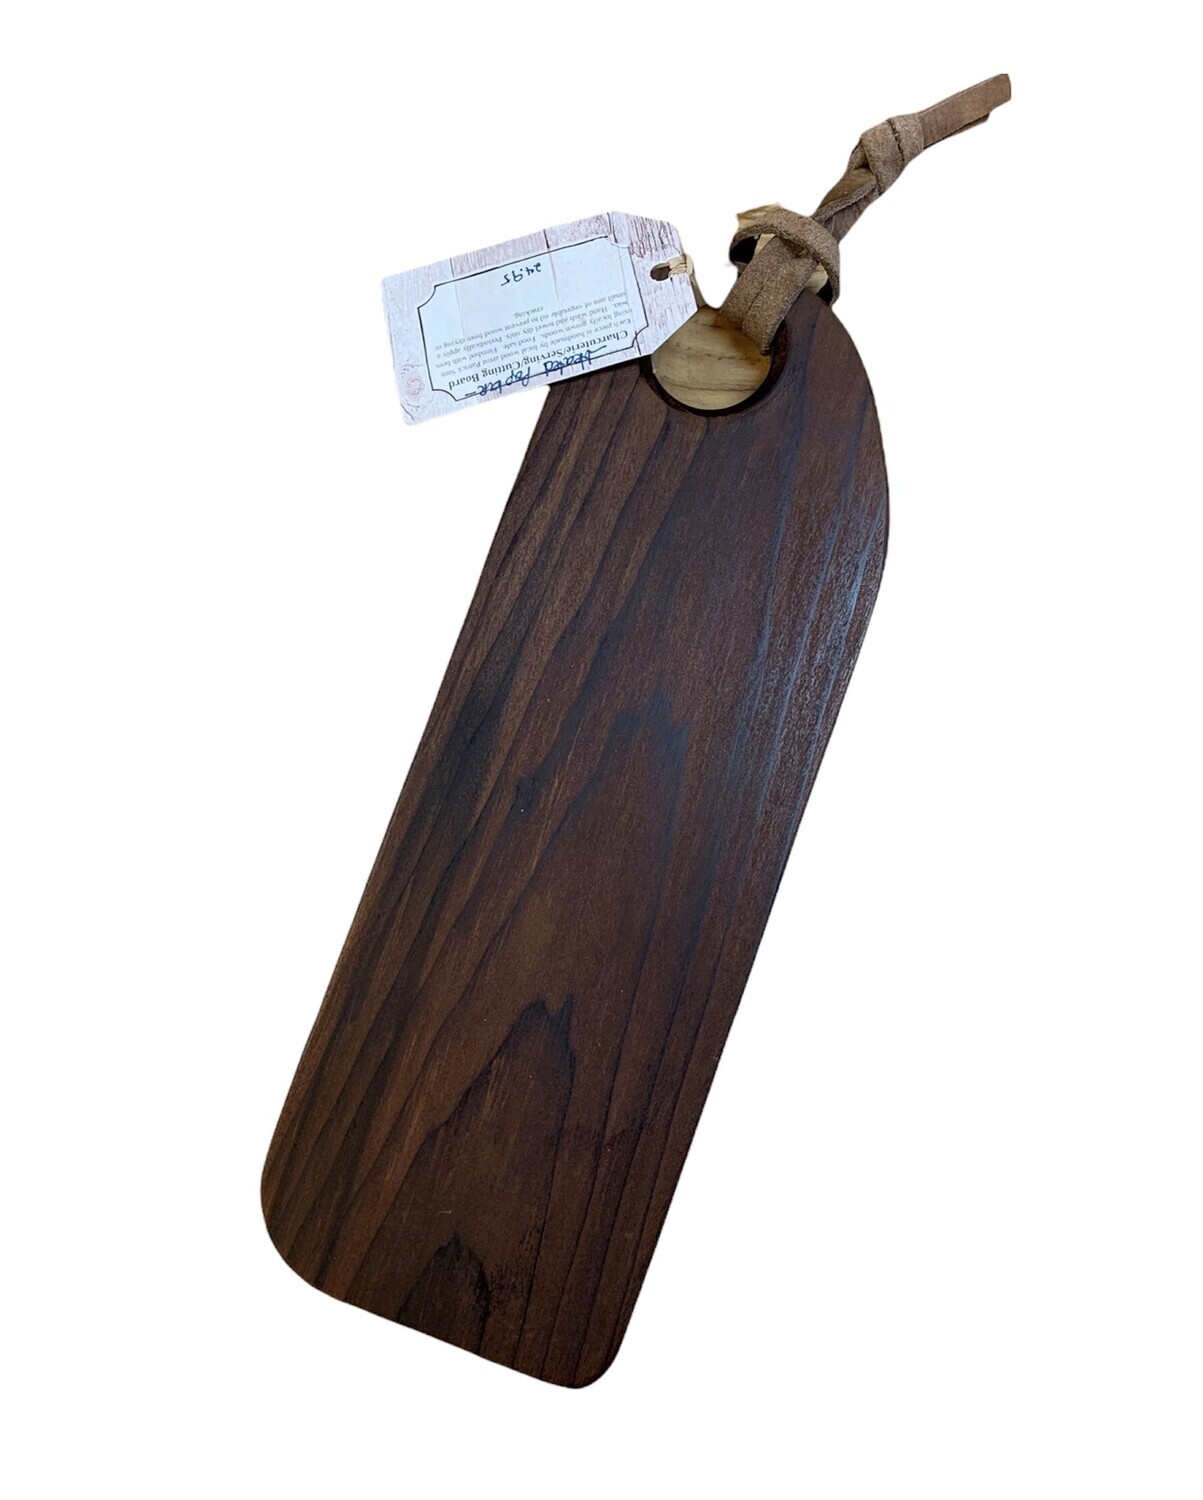 Charcuterie Serving Board - Heated Poplar